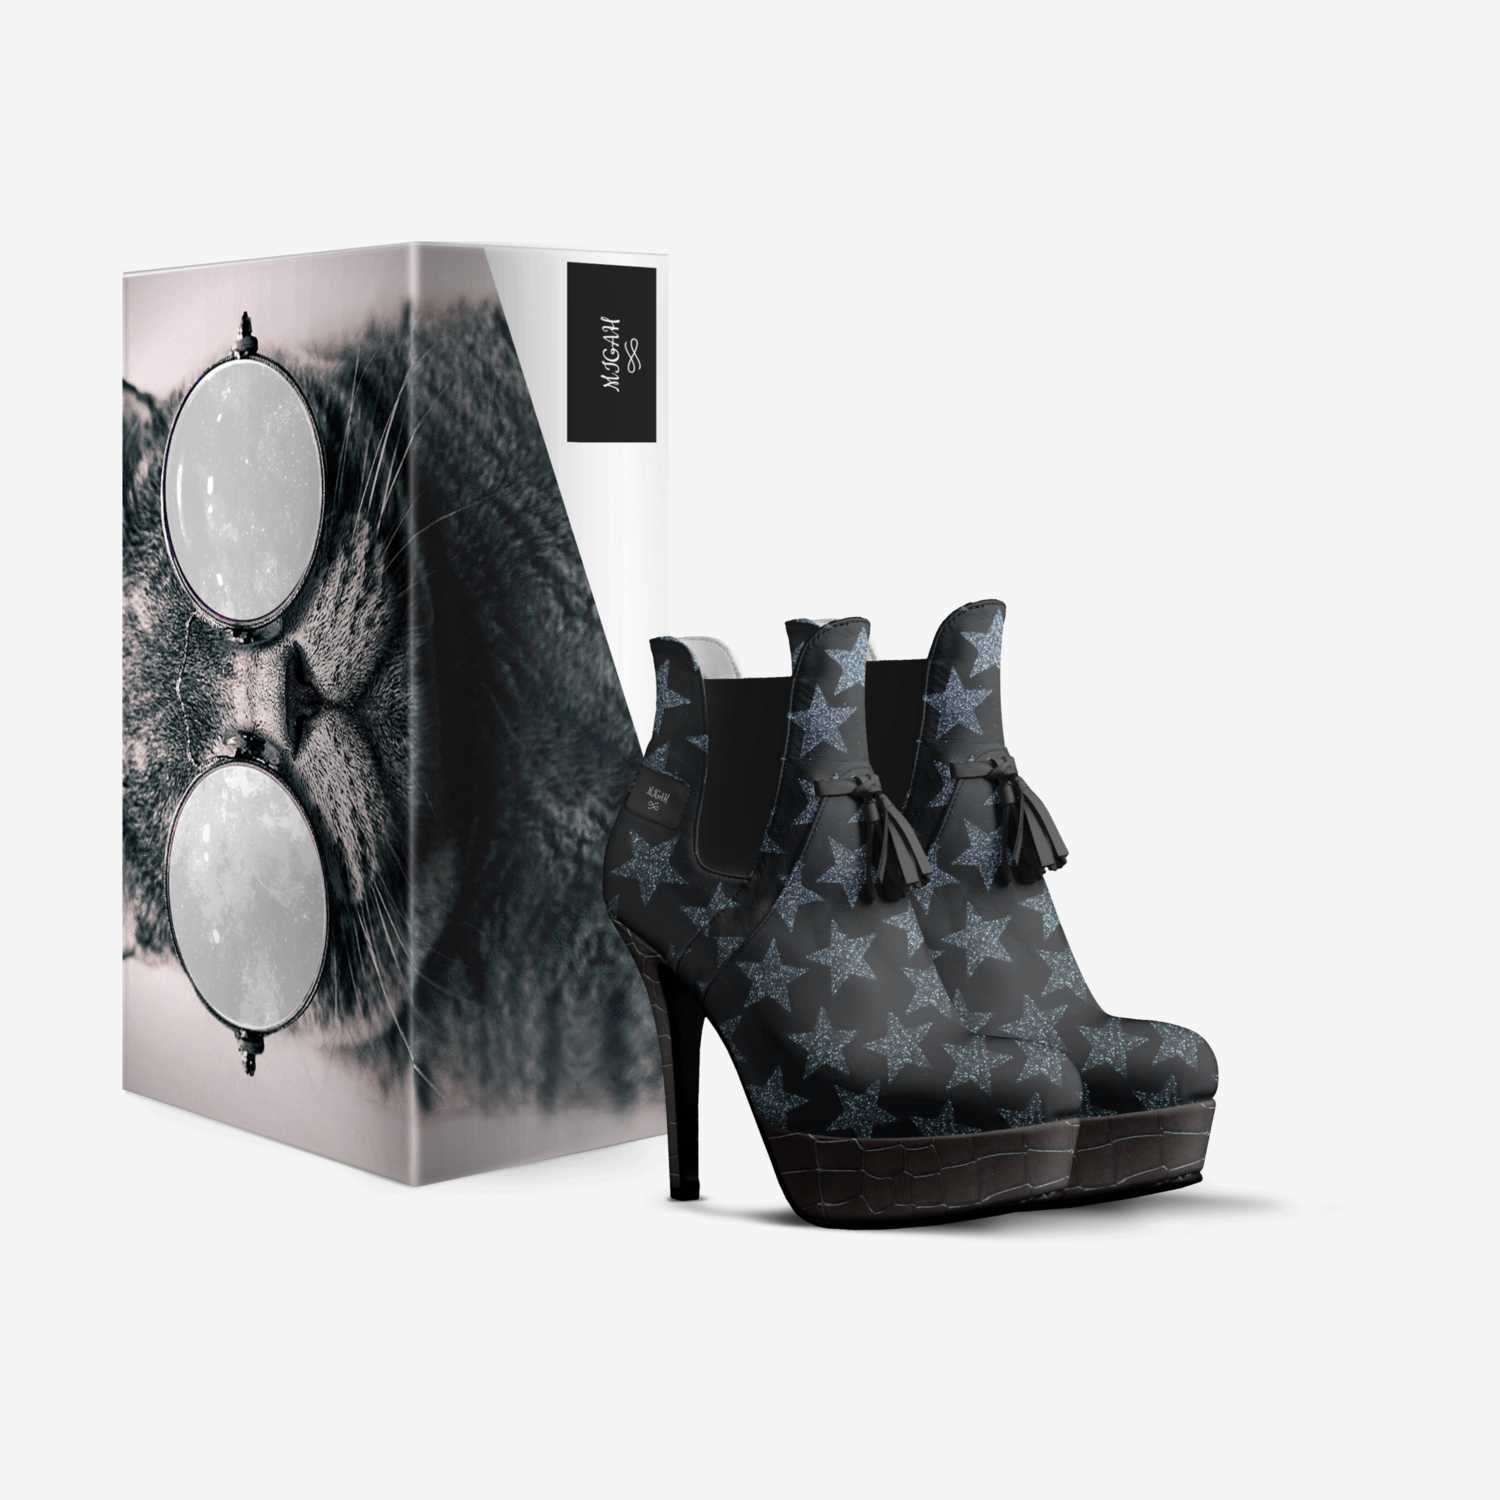 MIGAH custom made in Italy shoes by Vugah Munang | Box view